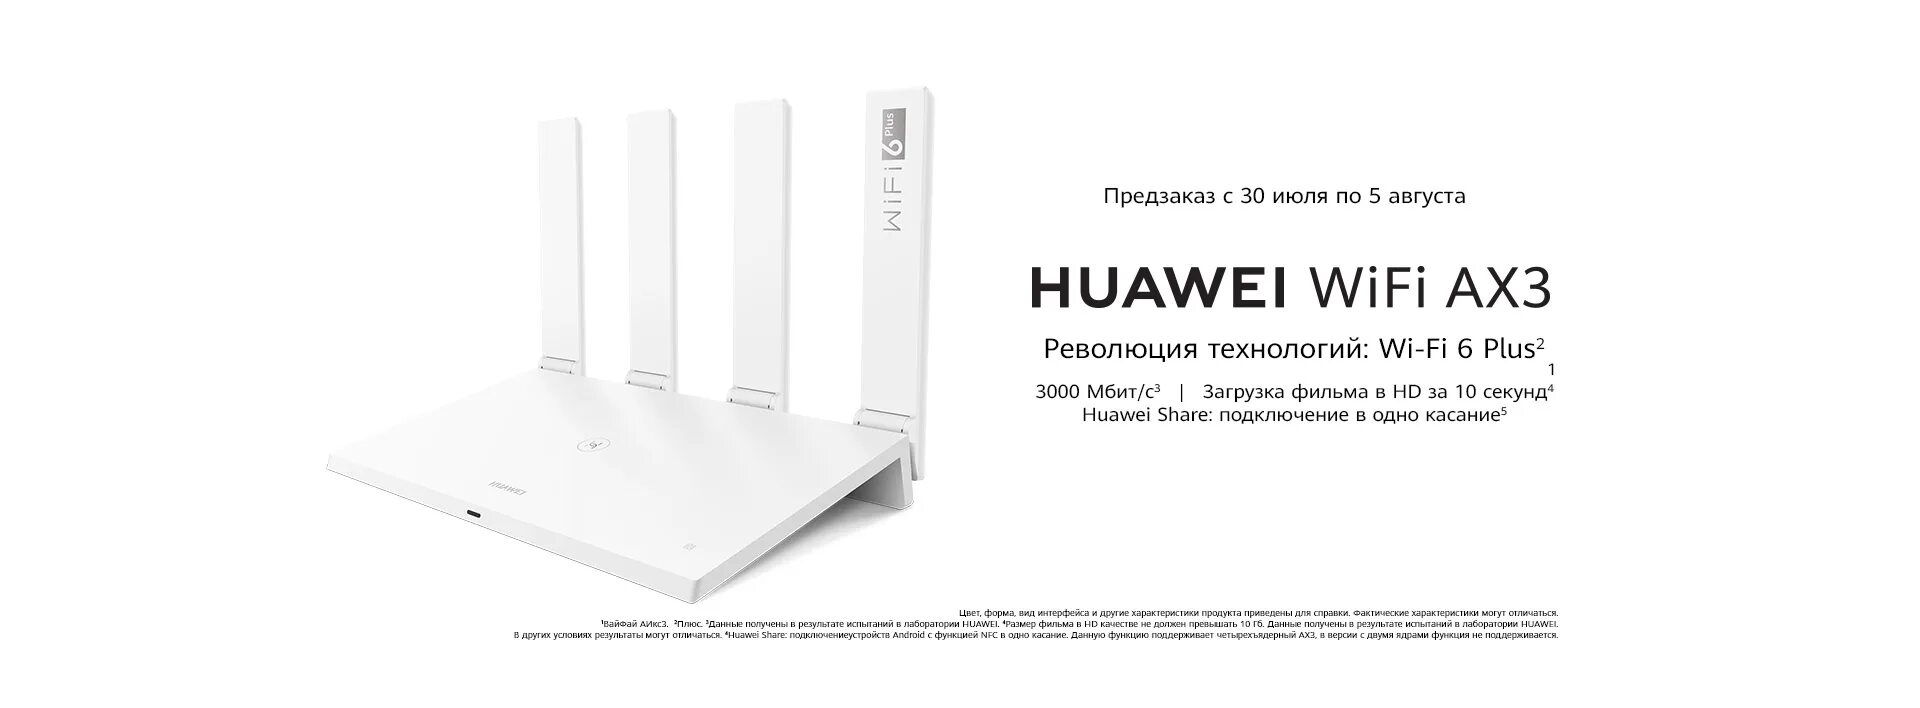 Wi-Fi роутер Huawei ax3 ws7200. Huawei WIFI ax3 Цзы. Wi-Fi роутер Huawei ws7200 (ax3) Pro ax3000. Huawei WIFI ax3 админка.